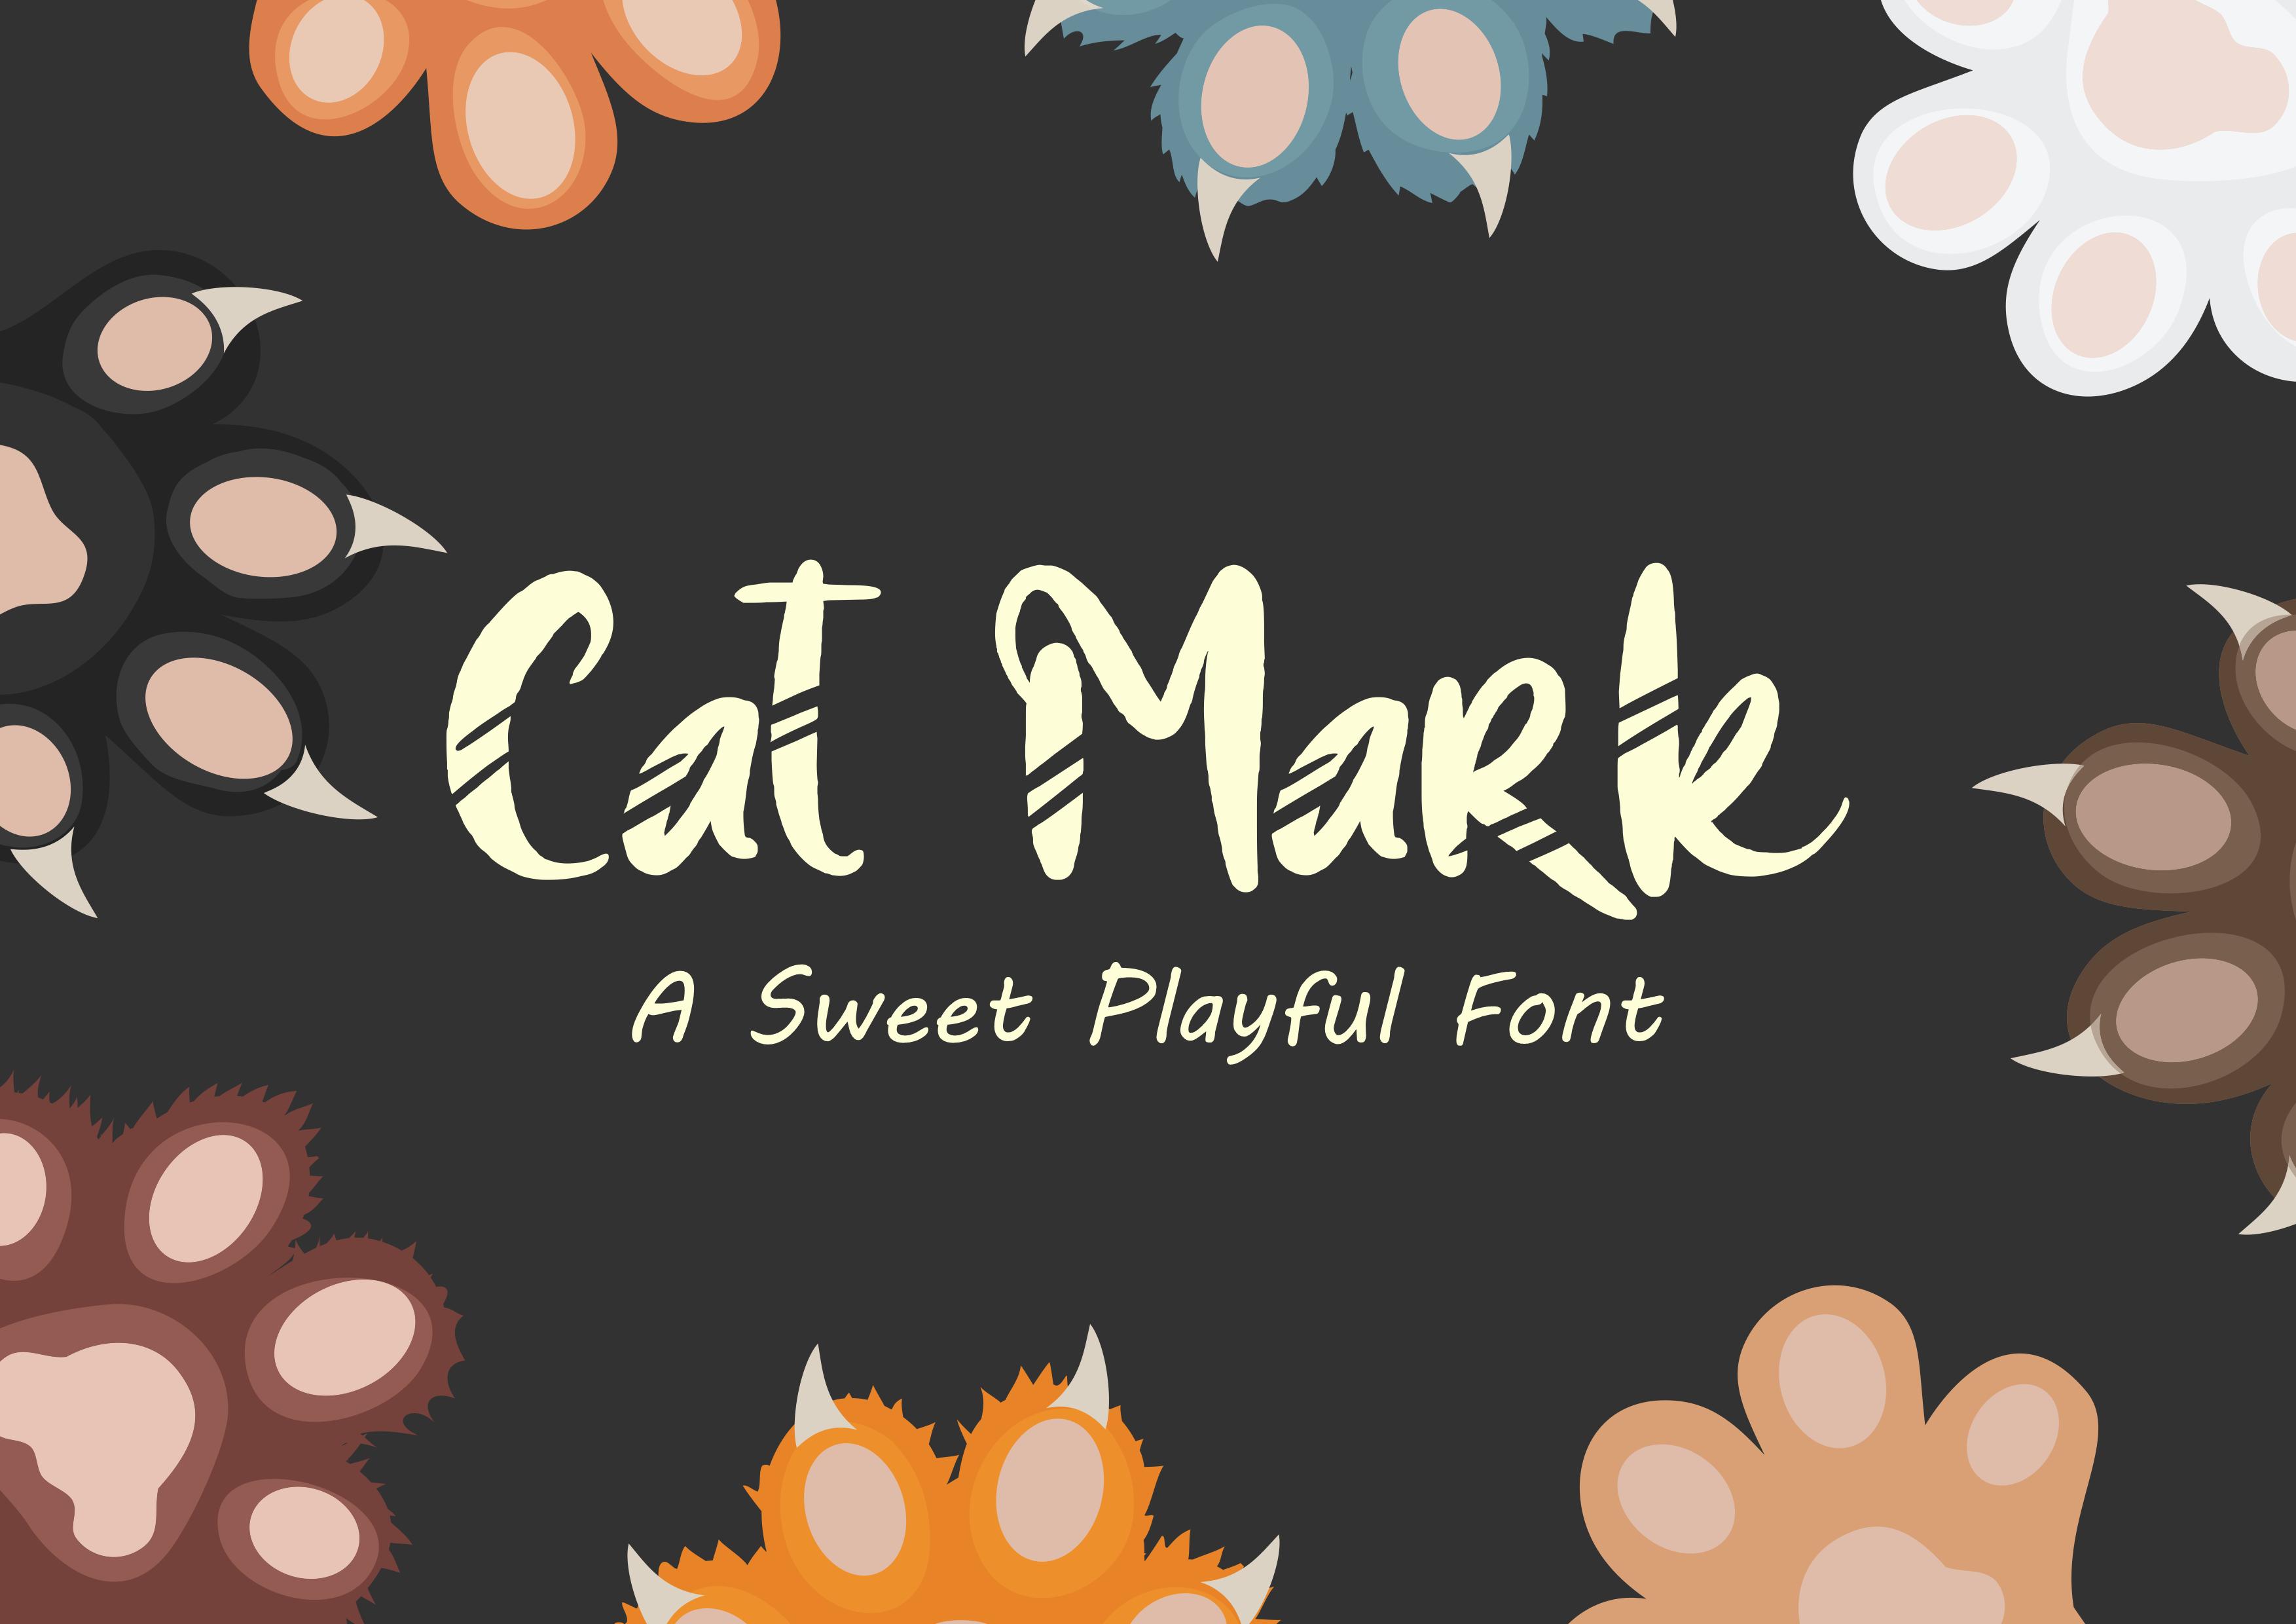 Cat Mark Font